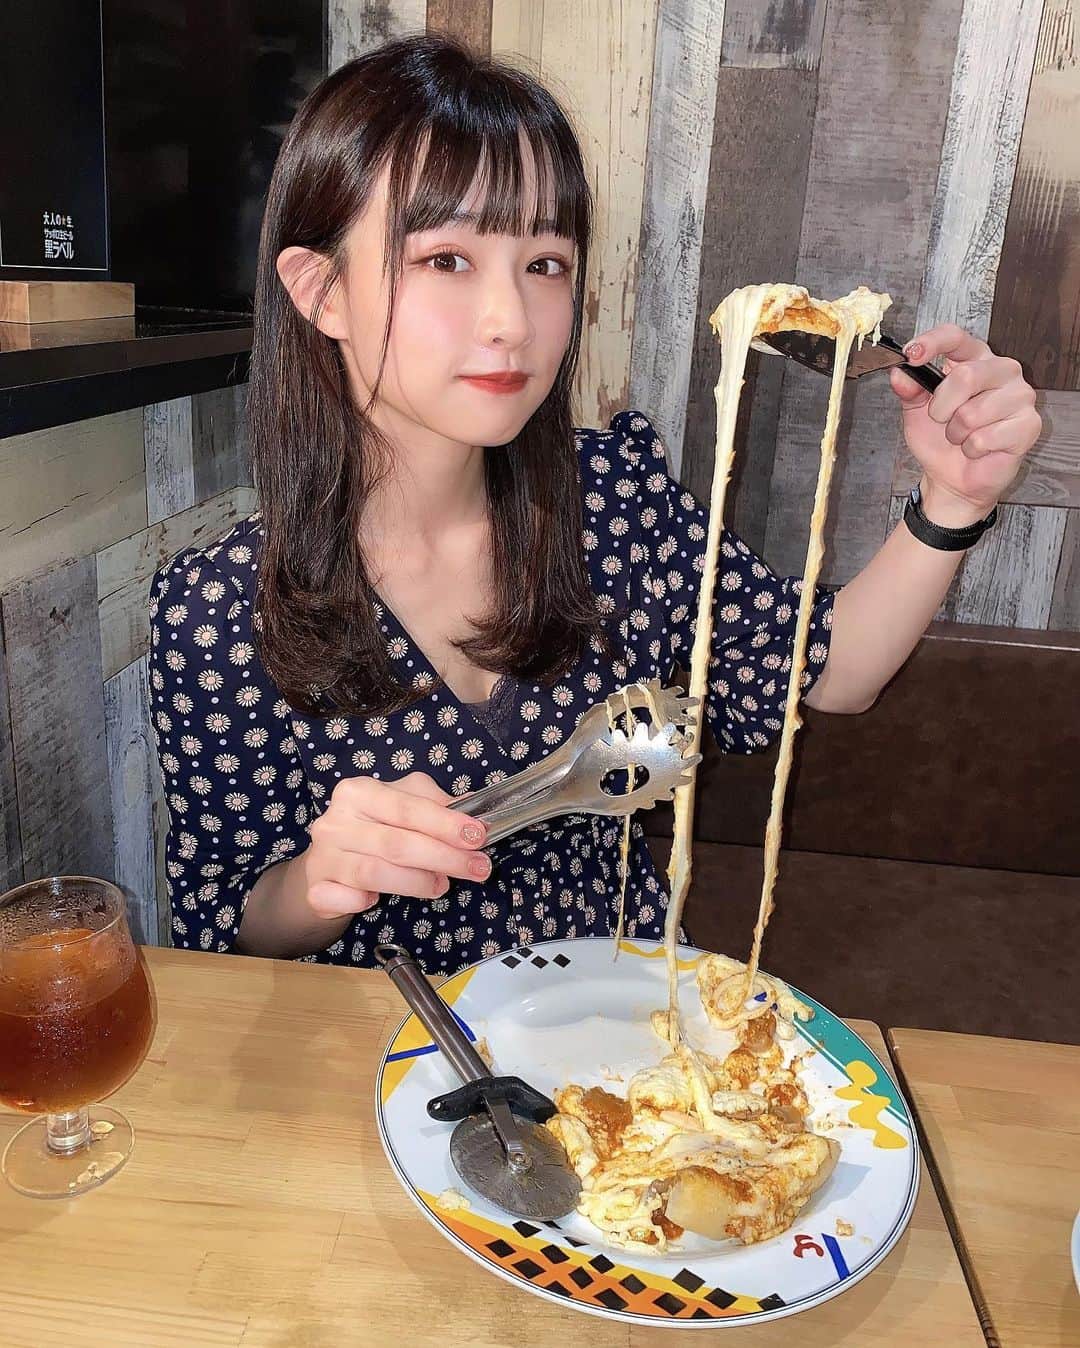 森下愛里沙(もりしたありさ) さんのインスタグラム写真 - (森下愛里沙(もりしたありさ) Instagram)「ㅤㅤㅤㅤㅤㅤㅤㅤㅤㅤㅤㅤㅤ ㅤㅤㅤㅤㅤㅤㅤㅤㅤㅤㅤㅤㅤ ㅤㅤㅤㅤㅤㅤㅤㅤㅤㅤㅤㅤㅤ ㅤㅤㅤㅤㅤㅤㅤㅤㅤㅤㅤㅤㅤ 新宿にある @umibal.shinjuku さんへ 行ってきました🧀 ㅤㅤㅤㅤㅤㅤㅤㅤㅤㅤㅤㅤㅤ ㅤㅤㅤㅤㅤㅤㅤㅤㅤㅤㅤㅤㅤ 隠れ家みたいなお店🍷 ㅤㅤㅤㅤㅤㅤㅤㅤㅤㅤㅤㅤㅤ ㅤㅤㅤㅤㅤㅤㅤㅤㅤㅤㅤㅤㅤ "ウミバル"ということもあって 海鮮のお料理がたくさんありました🐟 牡蠣をフライで食べたんですけど 凄く食べやすくて美味しかったです💓 ㅤㅤㅤㅤㅤㅤㅤㅤㅤㅤㅤㅤㅤ ㅤㅤㅤㅤㅤㅤㅤㅤㅤㅤㅤㅤㅤ 全部美味しかってたけど個人的に一番好きだったのは "シカゴピザ" 🍕 チーズ大好きな私にとっては大好物商品でした🥺👏🏻 ㅤㅤㅤㅤㅤㅤㅤㅤㅤㅤㅤㅤㅤ ㅤㅤㅤㅤㅤㅤㅤㅤㅤㅤㅤㅤㅤ ㅤㅤㅤㅤㅤㅤㅤㅤㅤㅤㅤㅤㅤ 女子会にもってこいだなと感じたお店🍷 もちろん友達同士でもデートでも使える 雰囲気の良いお店でした✨ ㅤㅤㅤㅤㅤㅤㅤㅤㅤㅤㅤㅤㅤ ㅤㅤㅤㅤㅤㅤㅤㅤㅤㅤㅤㅤㅤ ㅤㅤㅤㅤㅤㅤㅤㅤㅤㅤㅤㅤㅤ この日のワンピースは @spicaglow さんのもの👗 フレアになっていてとっても可愛くて 着心地がサラッとしていて楽ちん☝️ ㅤㅤㅤㅤㅤㅤㅤㅤㅤㅤㅤㅤㅤ ⁣●サイトで購入した商品を1000円引きで買える クーポンがあるので良かったら使用してください🙋🏻‍♀️ ⁣→クーポンコード : arsg⁣ ⁣ㅤㅤㅤㅤㅤㅤㅤㅤㅤㅤㅤㅤㅤ ㅤㅤㅤㅤㅤㅤㅤㅤㅤㅤㅤㅤㅤ ㅤㅤㅤㅤㅤㅤㅤㅤㅤㅤㅤㅤㅤ 時計 @mavenjapan  シンプルな時計なのでどんな洋服にも合わせれる有能アイテム⌚️ ㅤㅤㅤㅤㅤㅤㅤㅤㅤㅤㅤㅤㅤ ●10パーセントoffで購入できるクーポン載せておきます🙋🏻‍♀️ →クーポンコード : miniaes ㅤㅤㅤㅤㅤㅤㅤㅤㅤㅤㅤㅤㅤ ㅤㅤㅤㅤㅤㅤㅤㅤㅤㅤㅤㅤㅤ  #umiバル #新宿グルメ #東京グルメ #新宿バル #新宿イタリアン #魚介イタリアン #コラボベース #spicaglow⁣ #spicaglowstyle⁣ #マベン #マベンウォッチズ #時計 #腕時計 #mavenwatches #ファッション #ワンピースコーデ #ワンピース #韓国ファッション #今日のコーデ #夏コーデ #outfit #like4likes #pr #ootd #instagood #l4l #instalike #fashion #팔로미 #팔로우미」7月16日 20時49分 - mini.ari